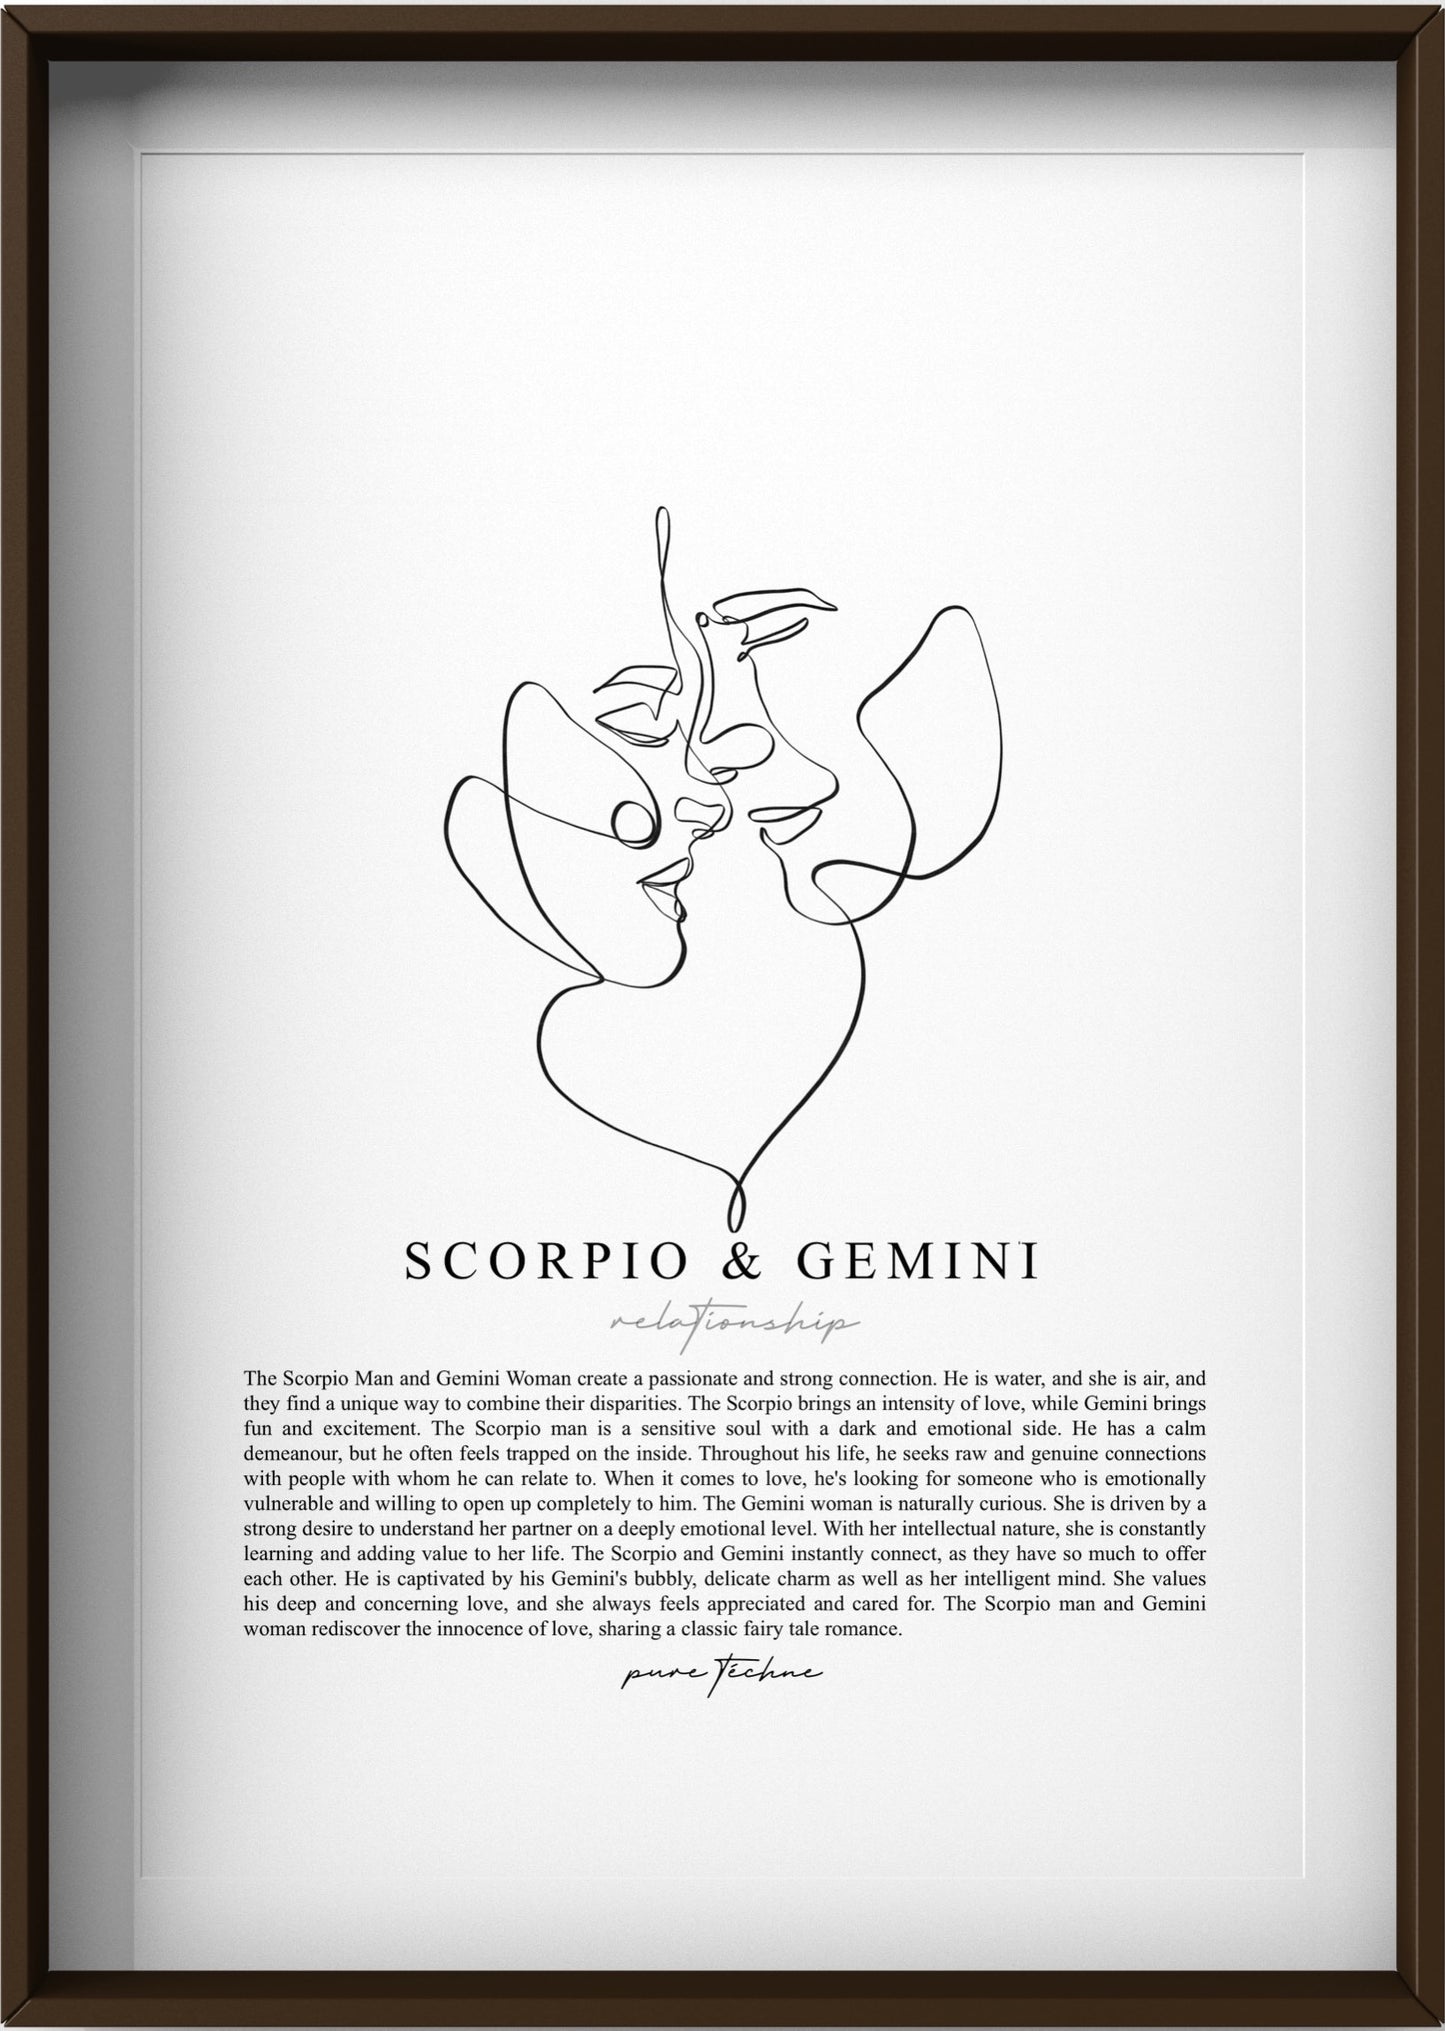 Scorpio Man & Gemini Woman